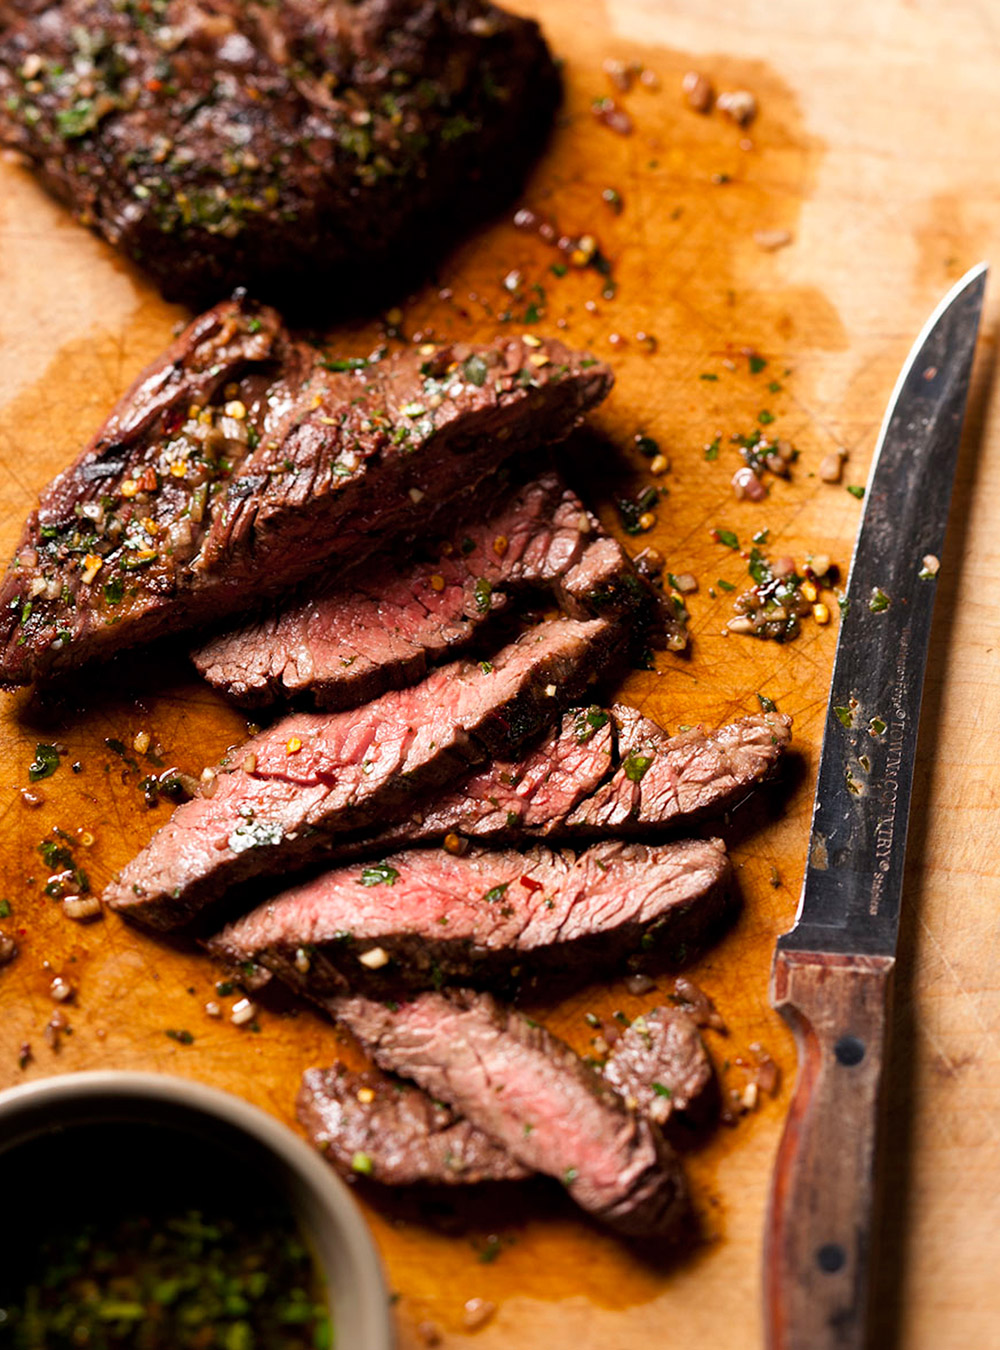 Recette de boeuf: tout sur les rôtis ou les steaks de boeuf  page 5 ...